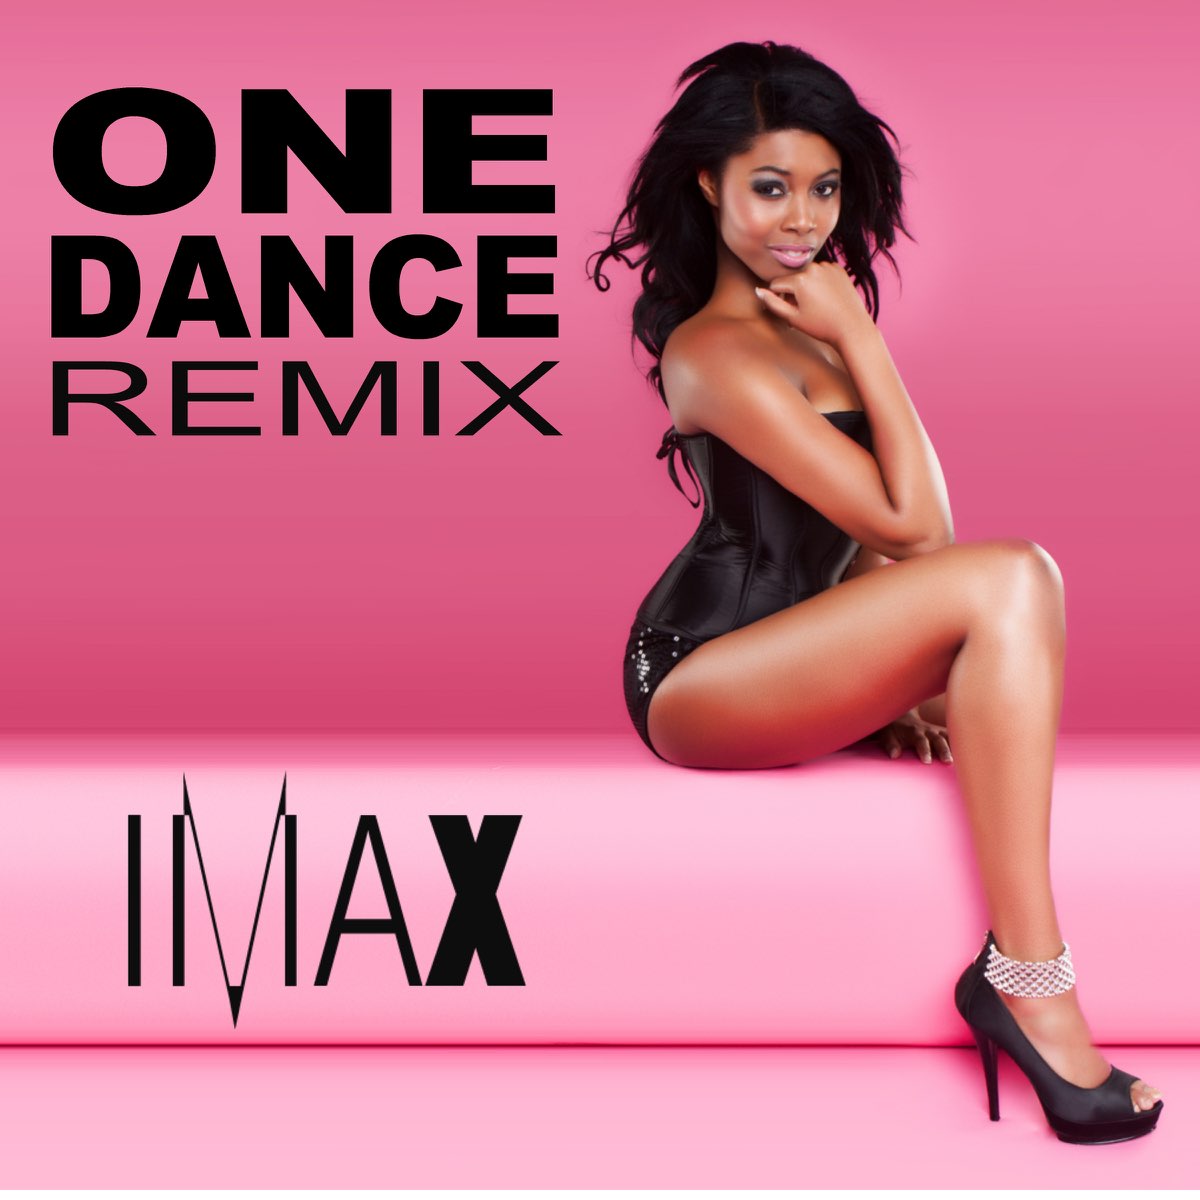 Dance remix mp3. Rem Dance. Dance Remixes. Оне дэнс. One Dance Remix.